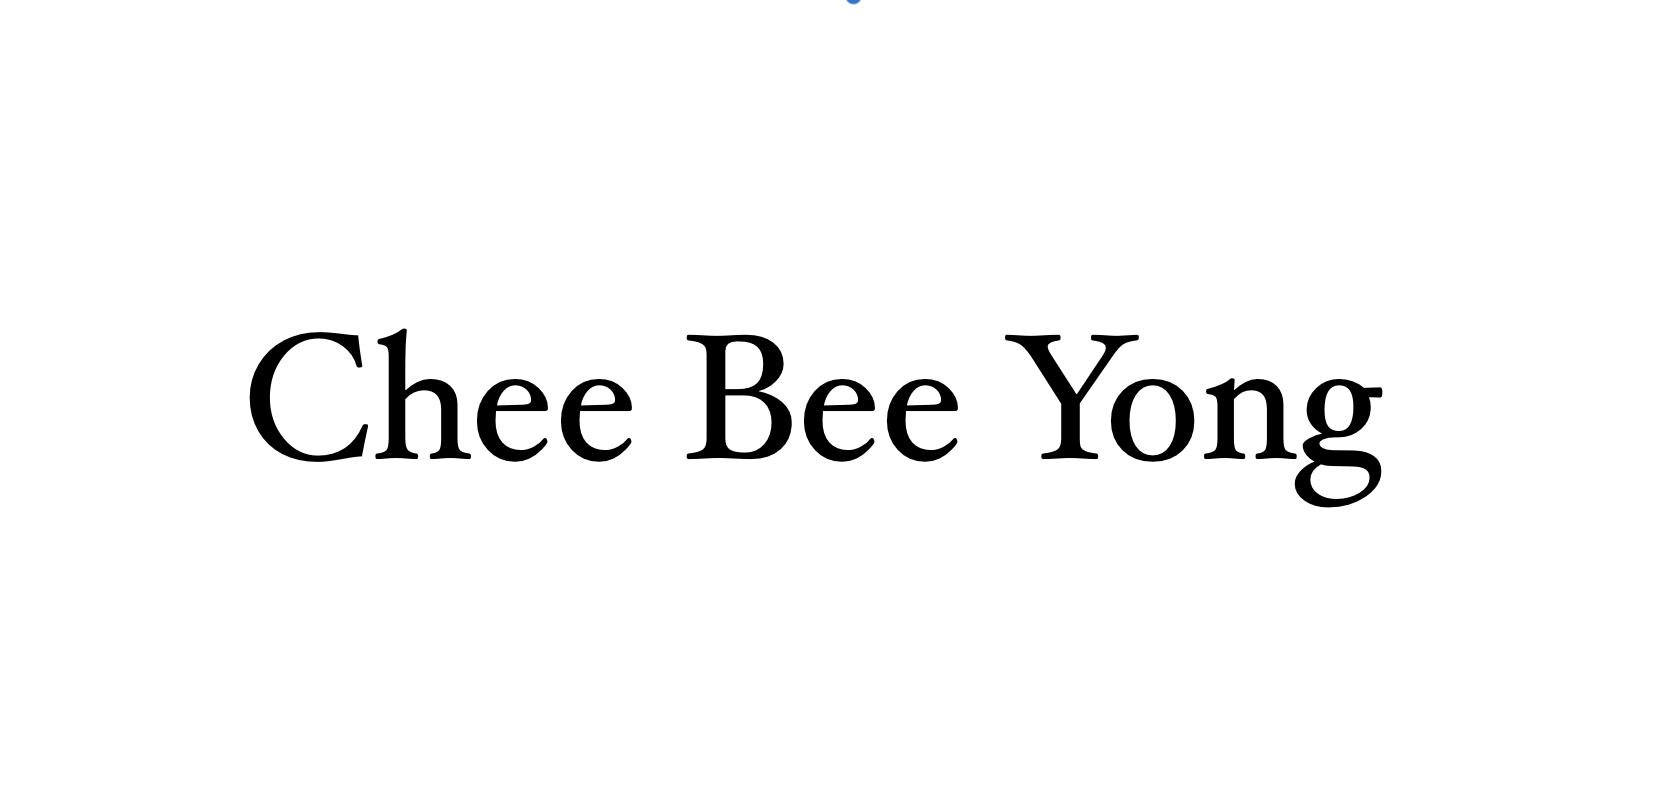 9-Chee-Bee-Yong-logo